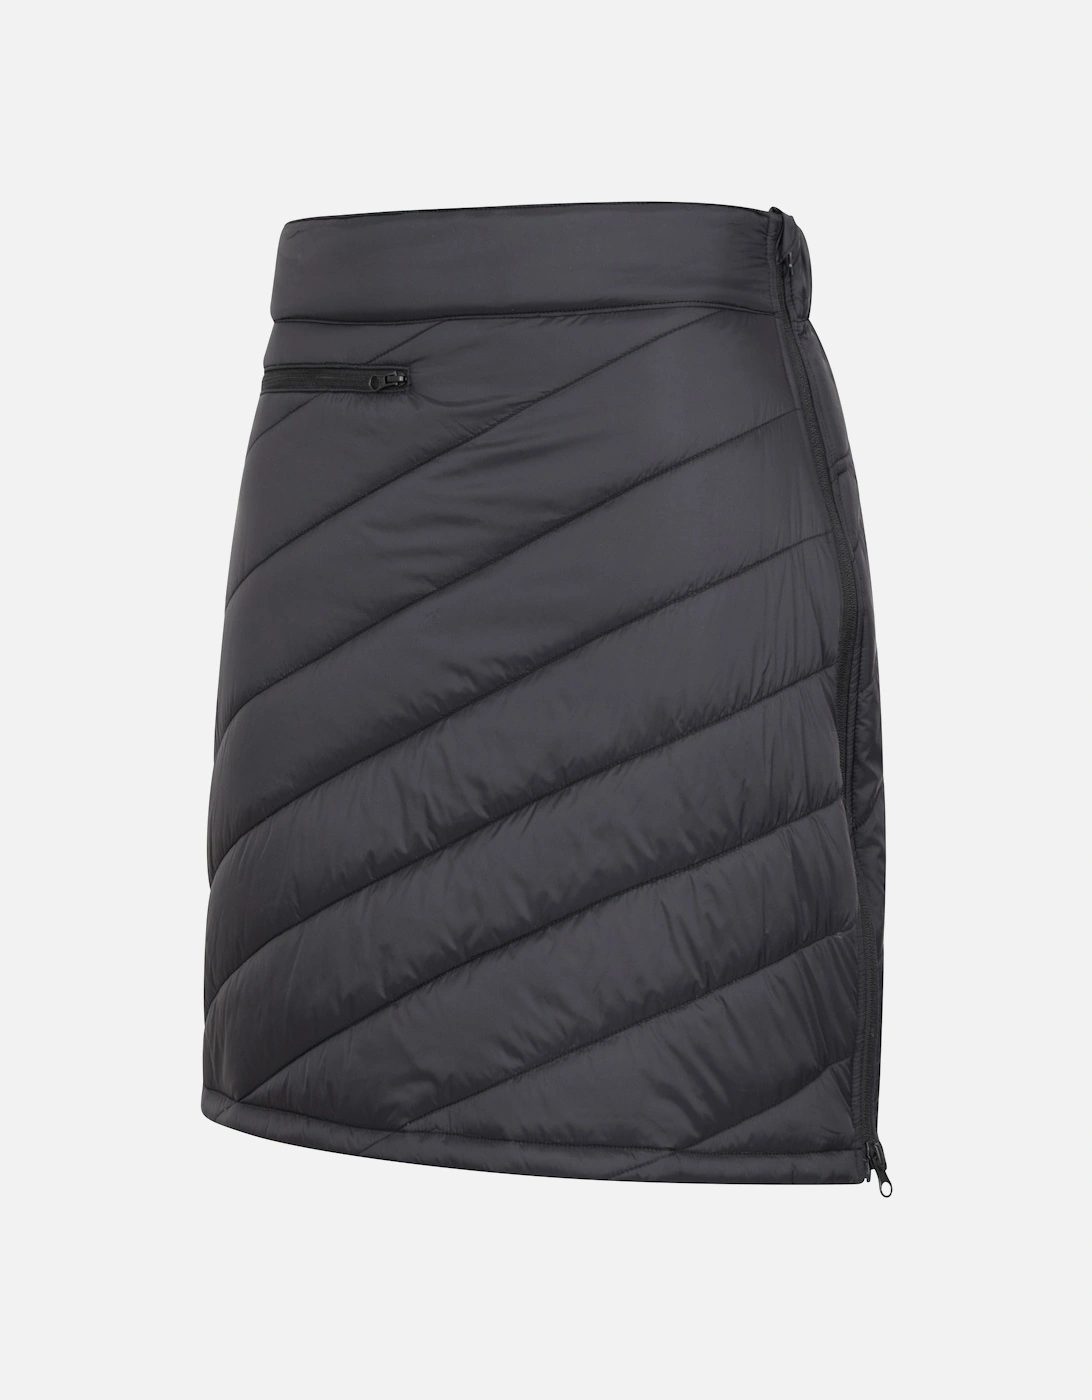 Womens/Ladies Water Resistant Padded Skirt